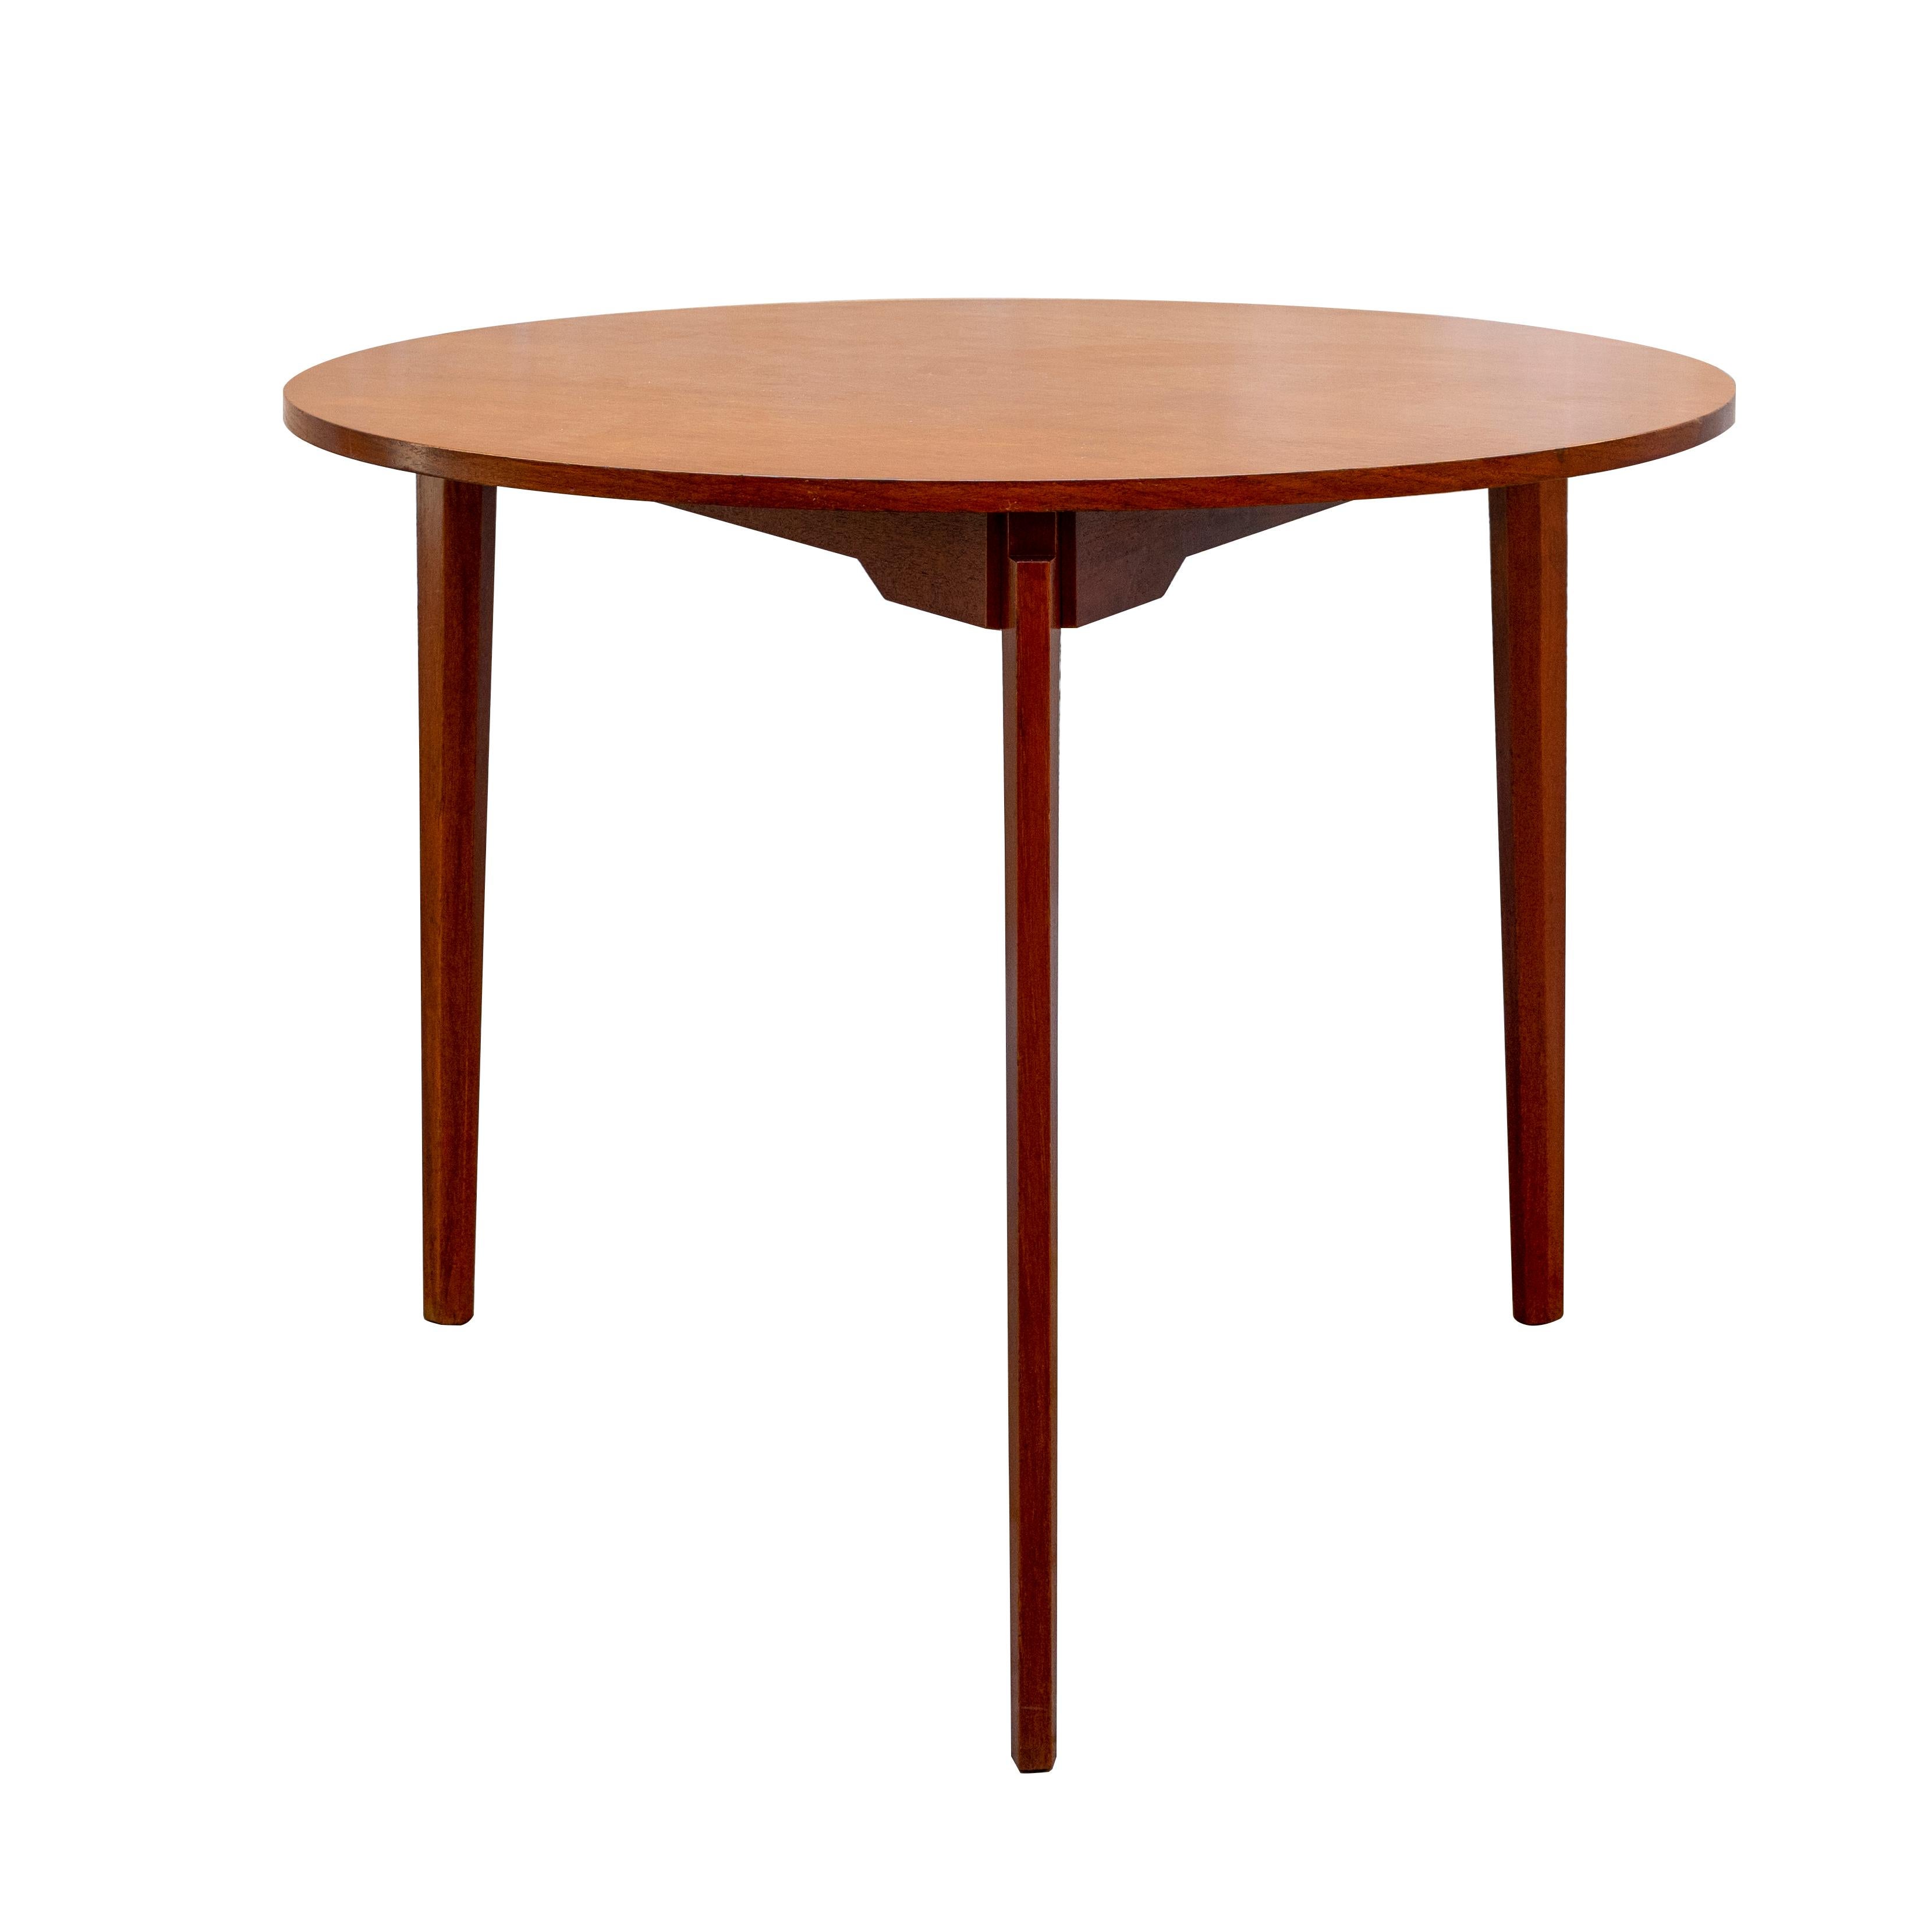 Table ronde à trois pieds de style Gio Ponti Italie Mid-Century Modern.
La table ronde dans le style de Gio Ponti, le design avec seulement trois jambes est grand le motif qui est créé dans l'espace entre le haut et les tiges, qui sont insérés et